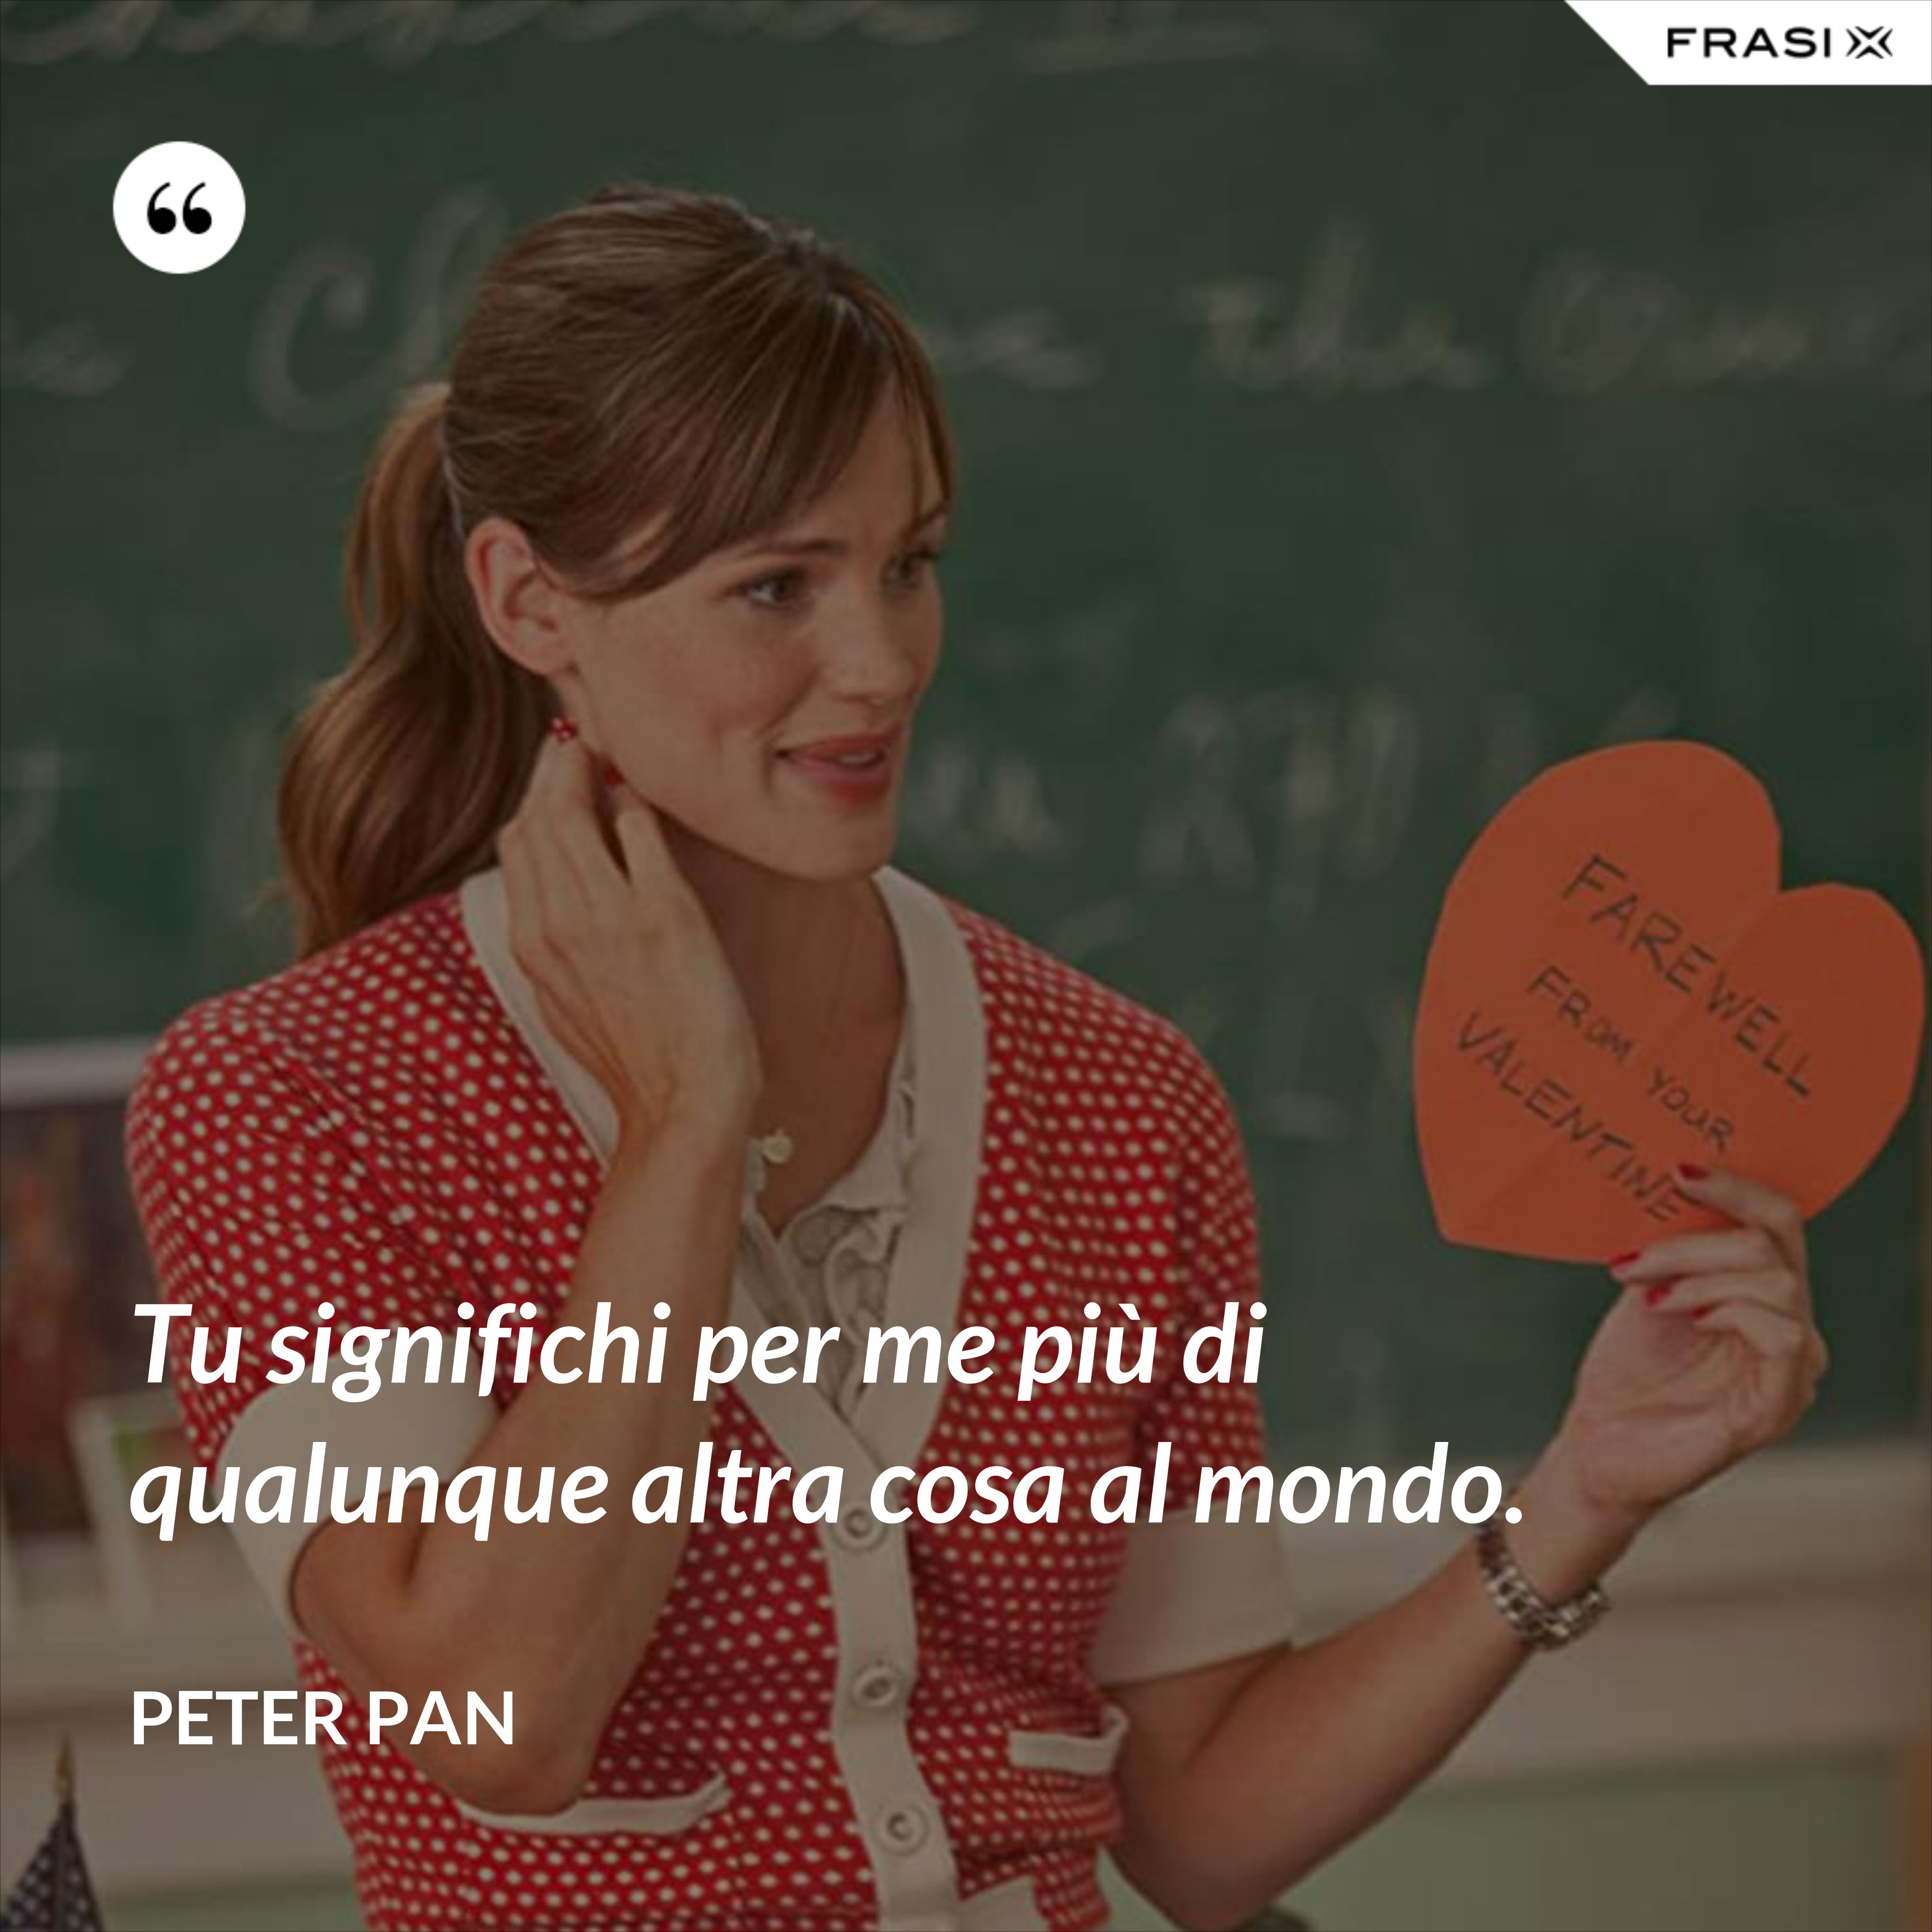 Tu significhi per me più di qualunque altra cosa al mondo. - Peter Pan